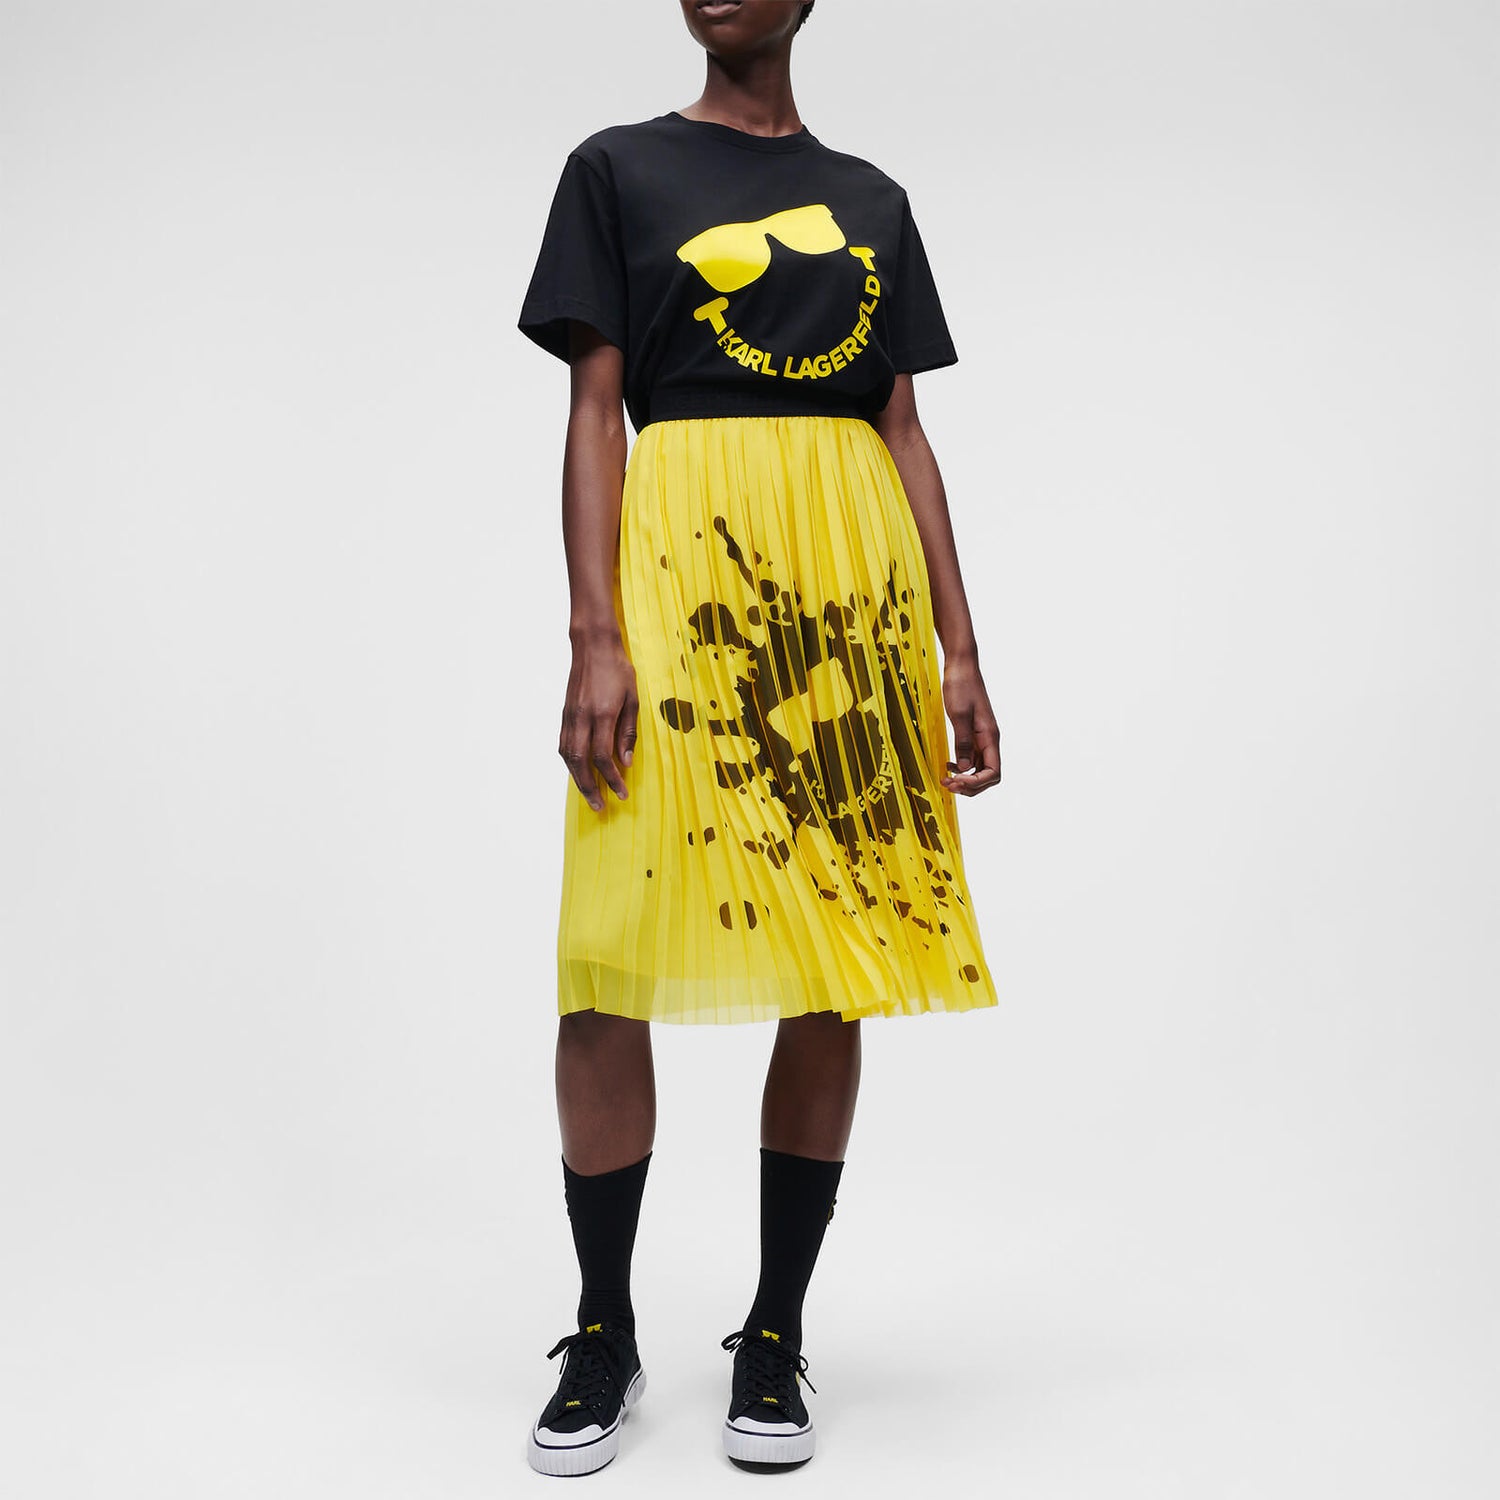 KARL LAGERFELD Women's Unisex Smiley T-Shirt - Black - S